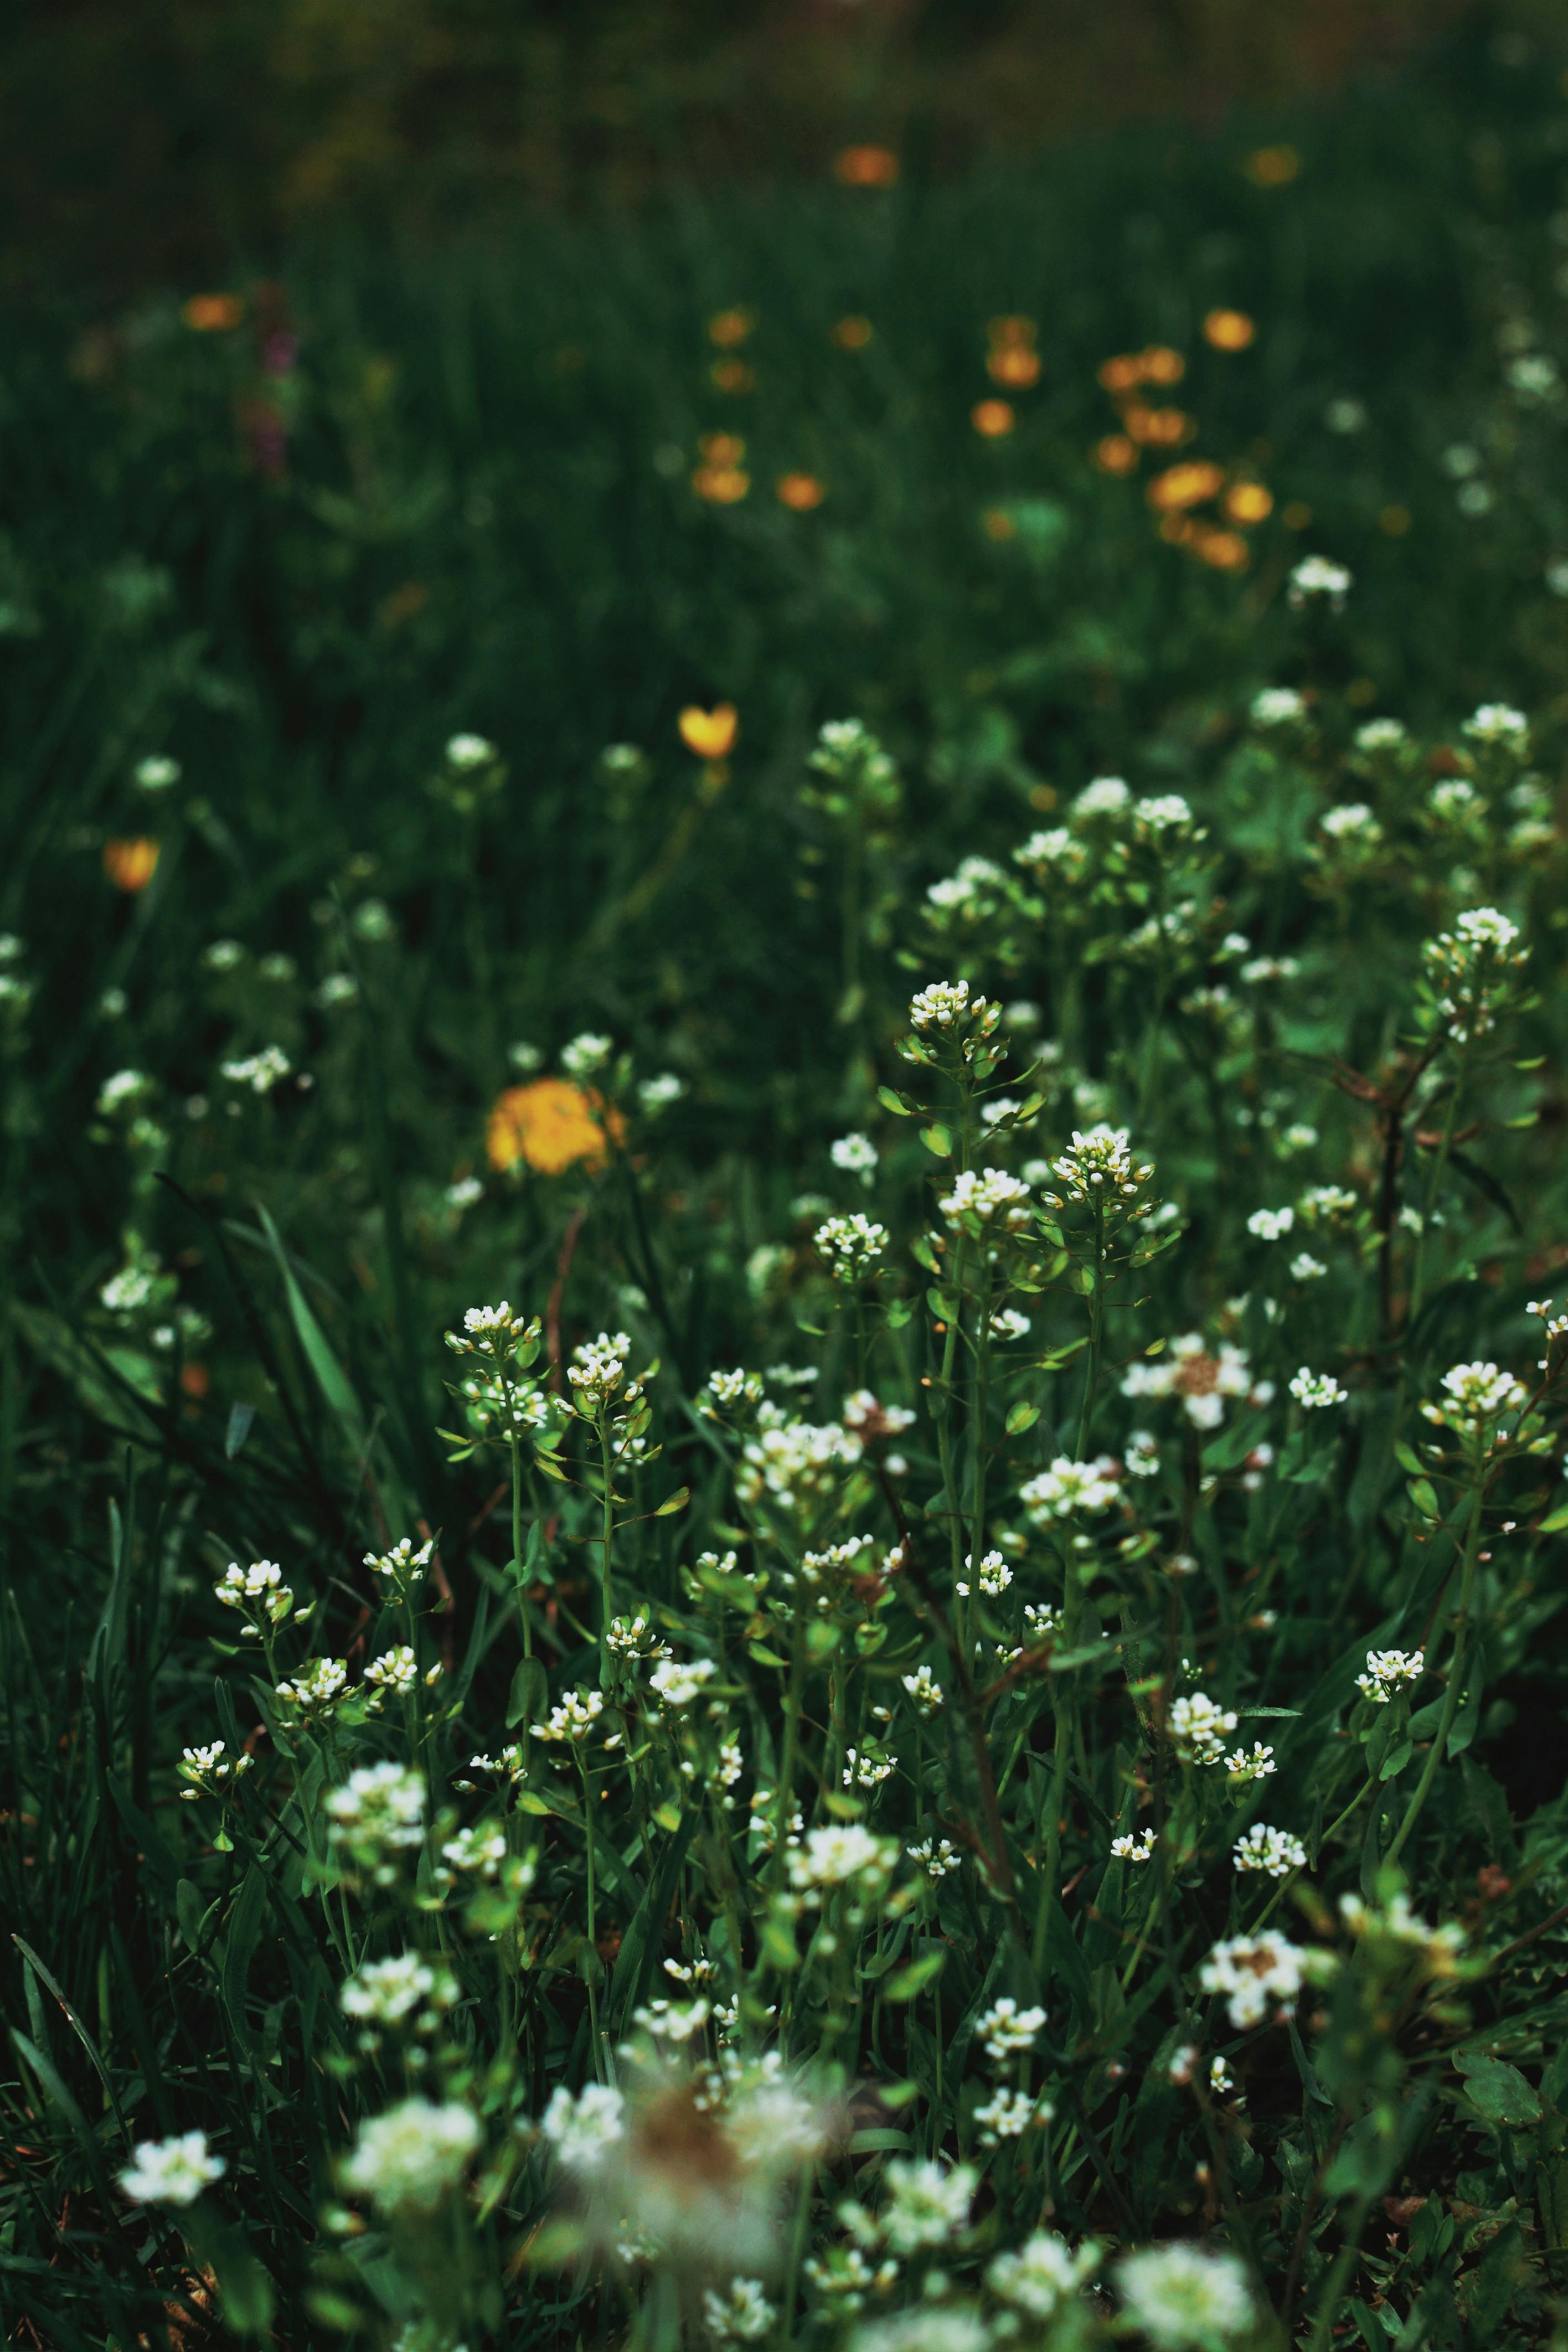 Hoa Trắng: Cùng chiêm ngưỡng vẻ đẹp thanh khiết của hoa trắng, tượng trưng cho sự thuần khiết và tươi trẻ. Từ các bông hoa nhỏ đơn giản cho đến những cánh hoa hữu tình, những bông hoa trắng sẽ làm cho bạn cảm thấy thật thanh lịch và sang trọng.